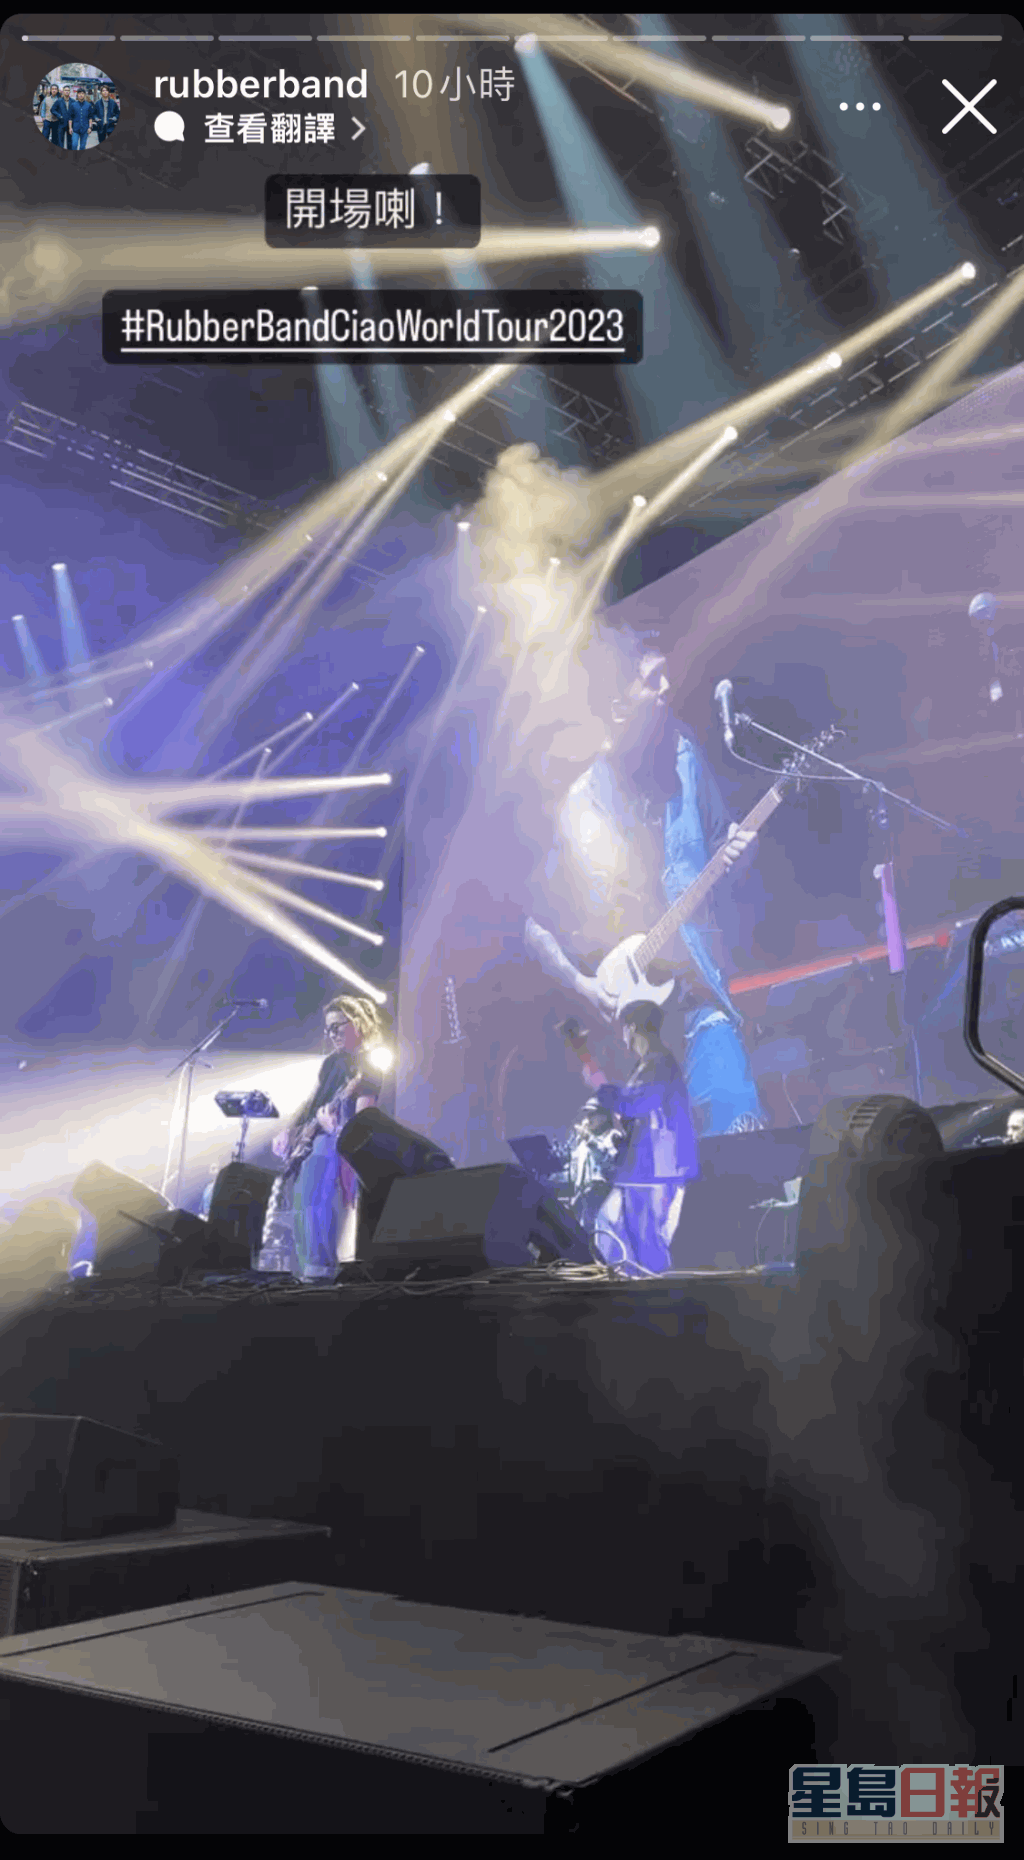 RubberBand昨晚在倫敦舉行演唱會，之後會到英國曼徹斯特、德國及荷蘭繼續開騷。